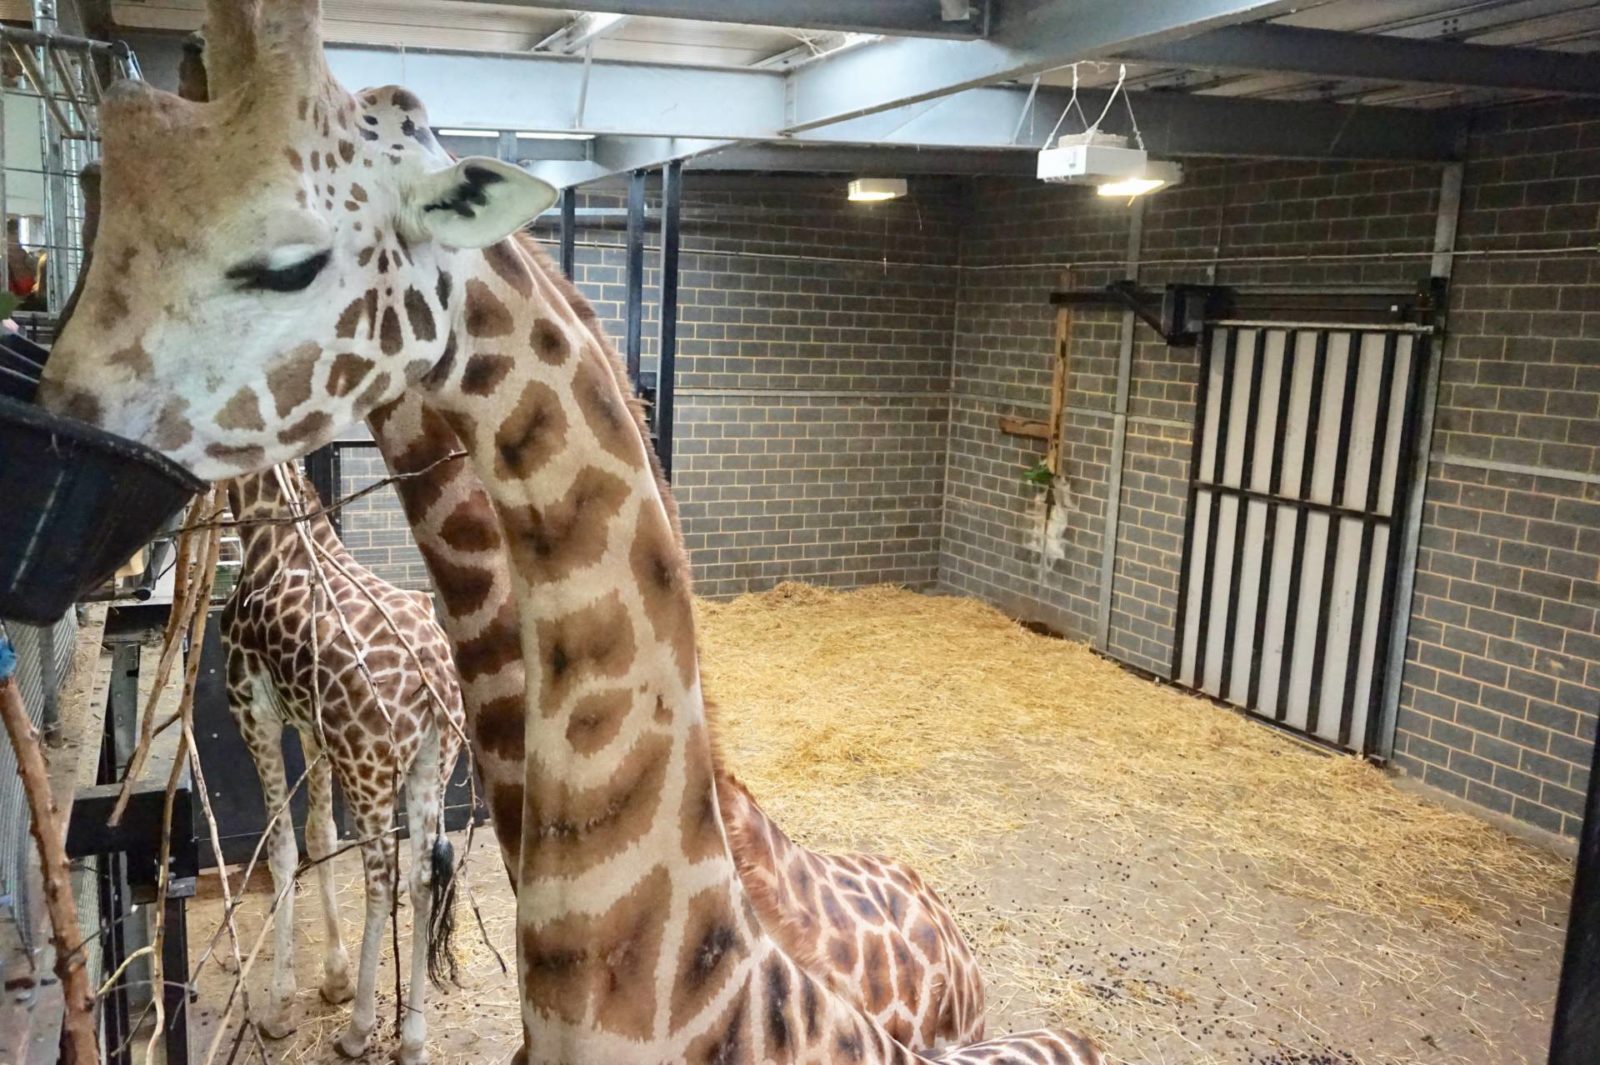 Giraffe-Feeding-Experience-at-Chessington